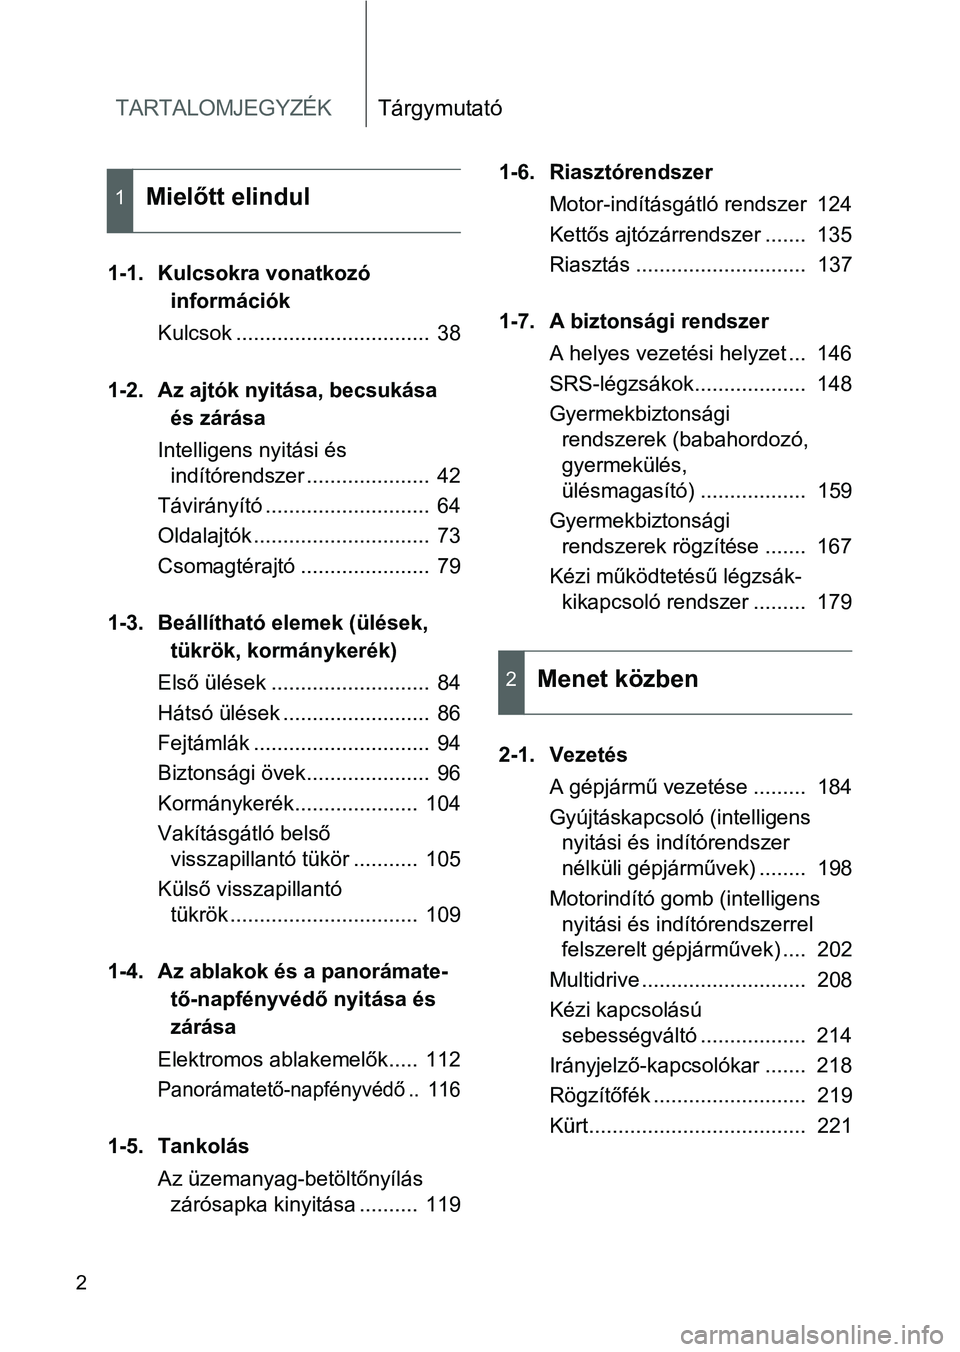 TOYOTA VERSO 2016  Kezelési útmutató (in Hungarian) TARTALOMJEGYZÉKTárgymutató
2
1-1. Kulcsokra vonatkozó 
információk
Kulcsok .................................  38
1-2. Az ajtók nyitása, becsukása 
és zárása
Intelligens nyitási és 
indí